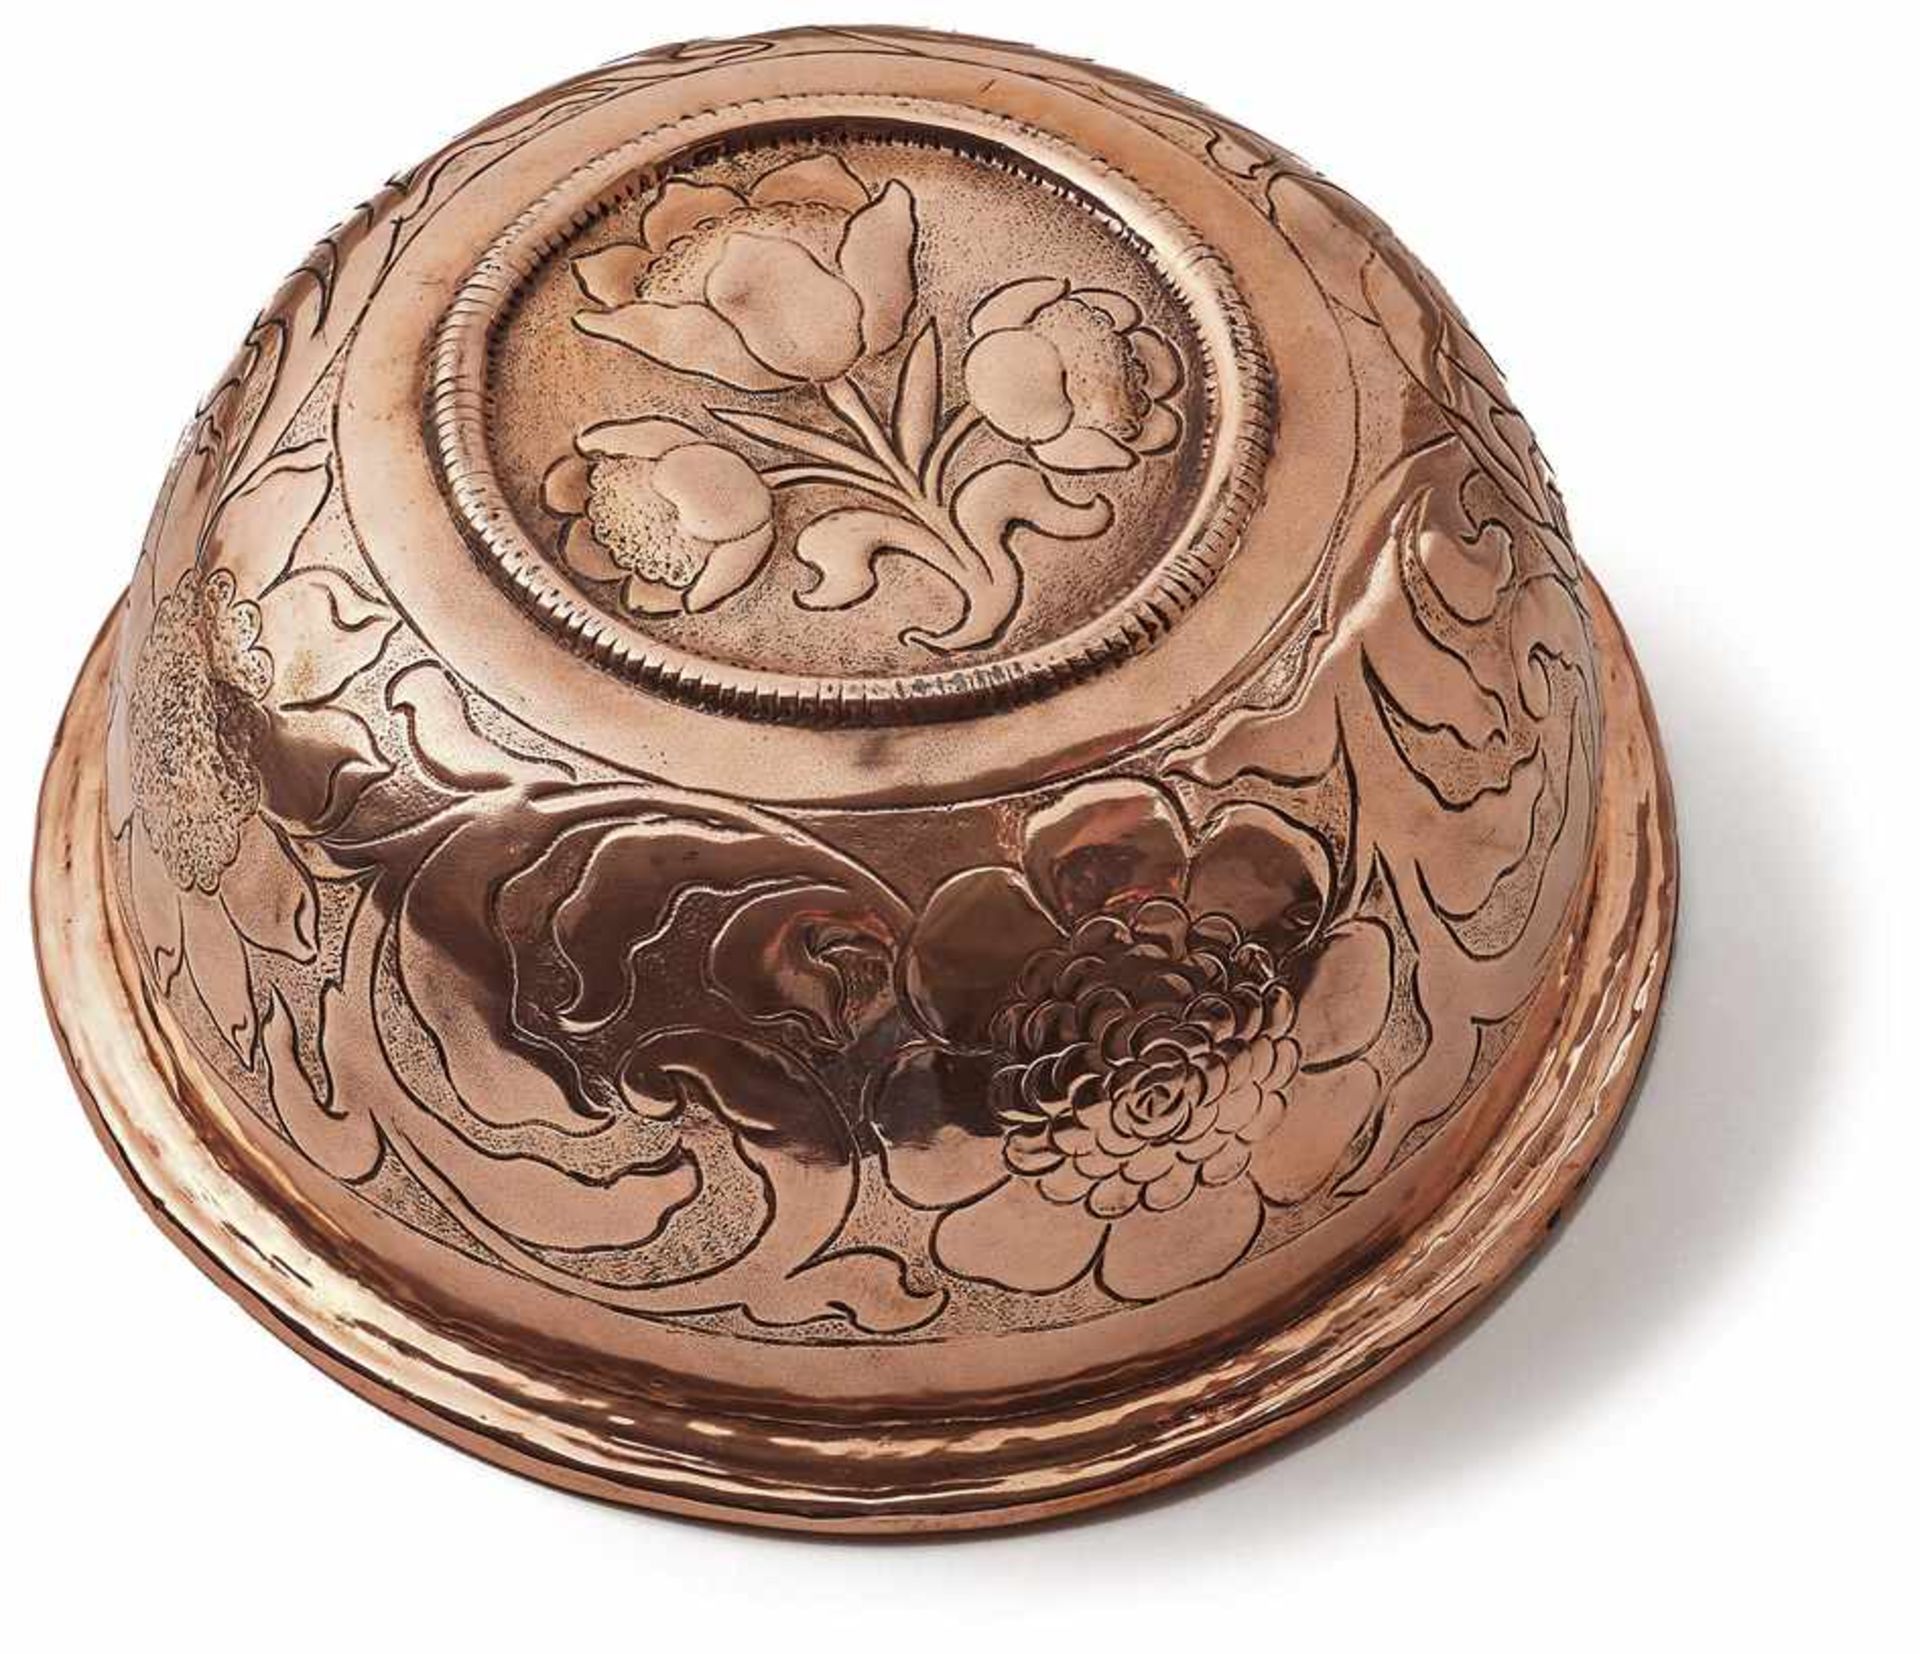 Kupferschüssel 18. Jh. Halbkugelige Form mit flächendeckendem Blüten- und Rankendekor. Kupfer mit